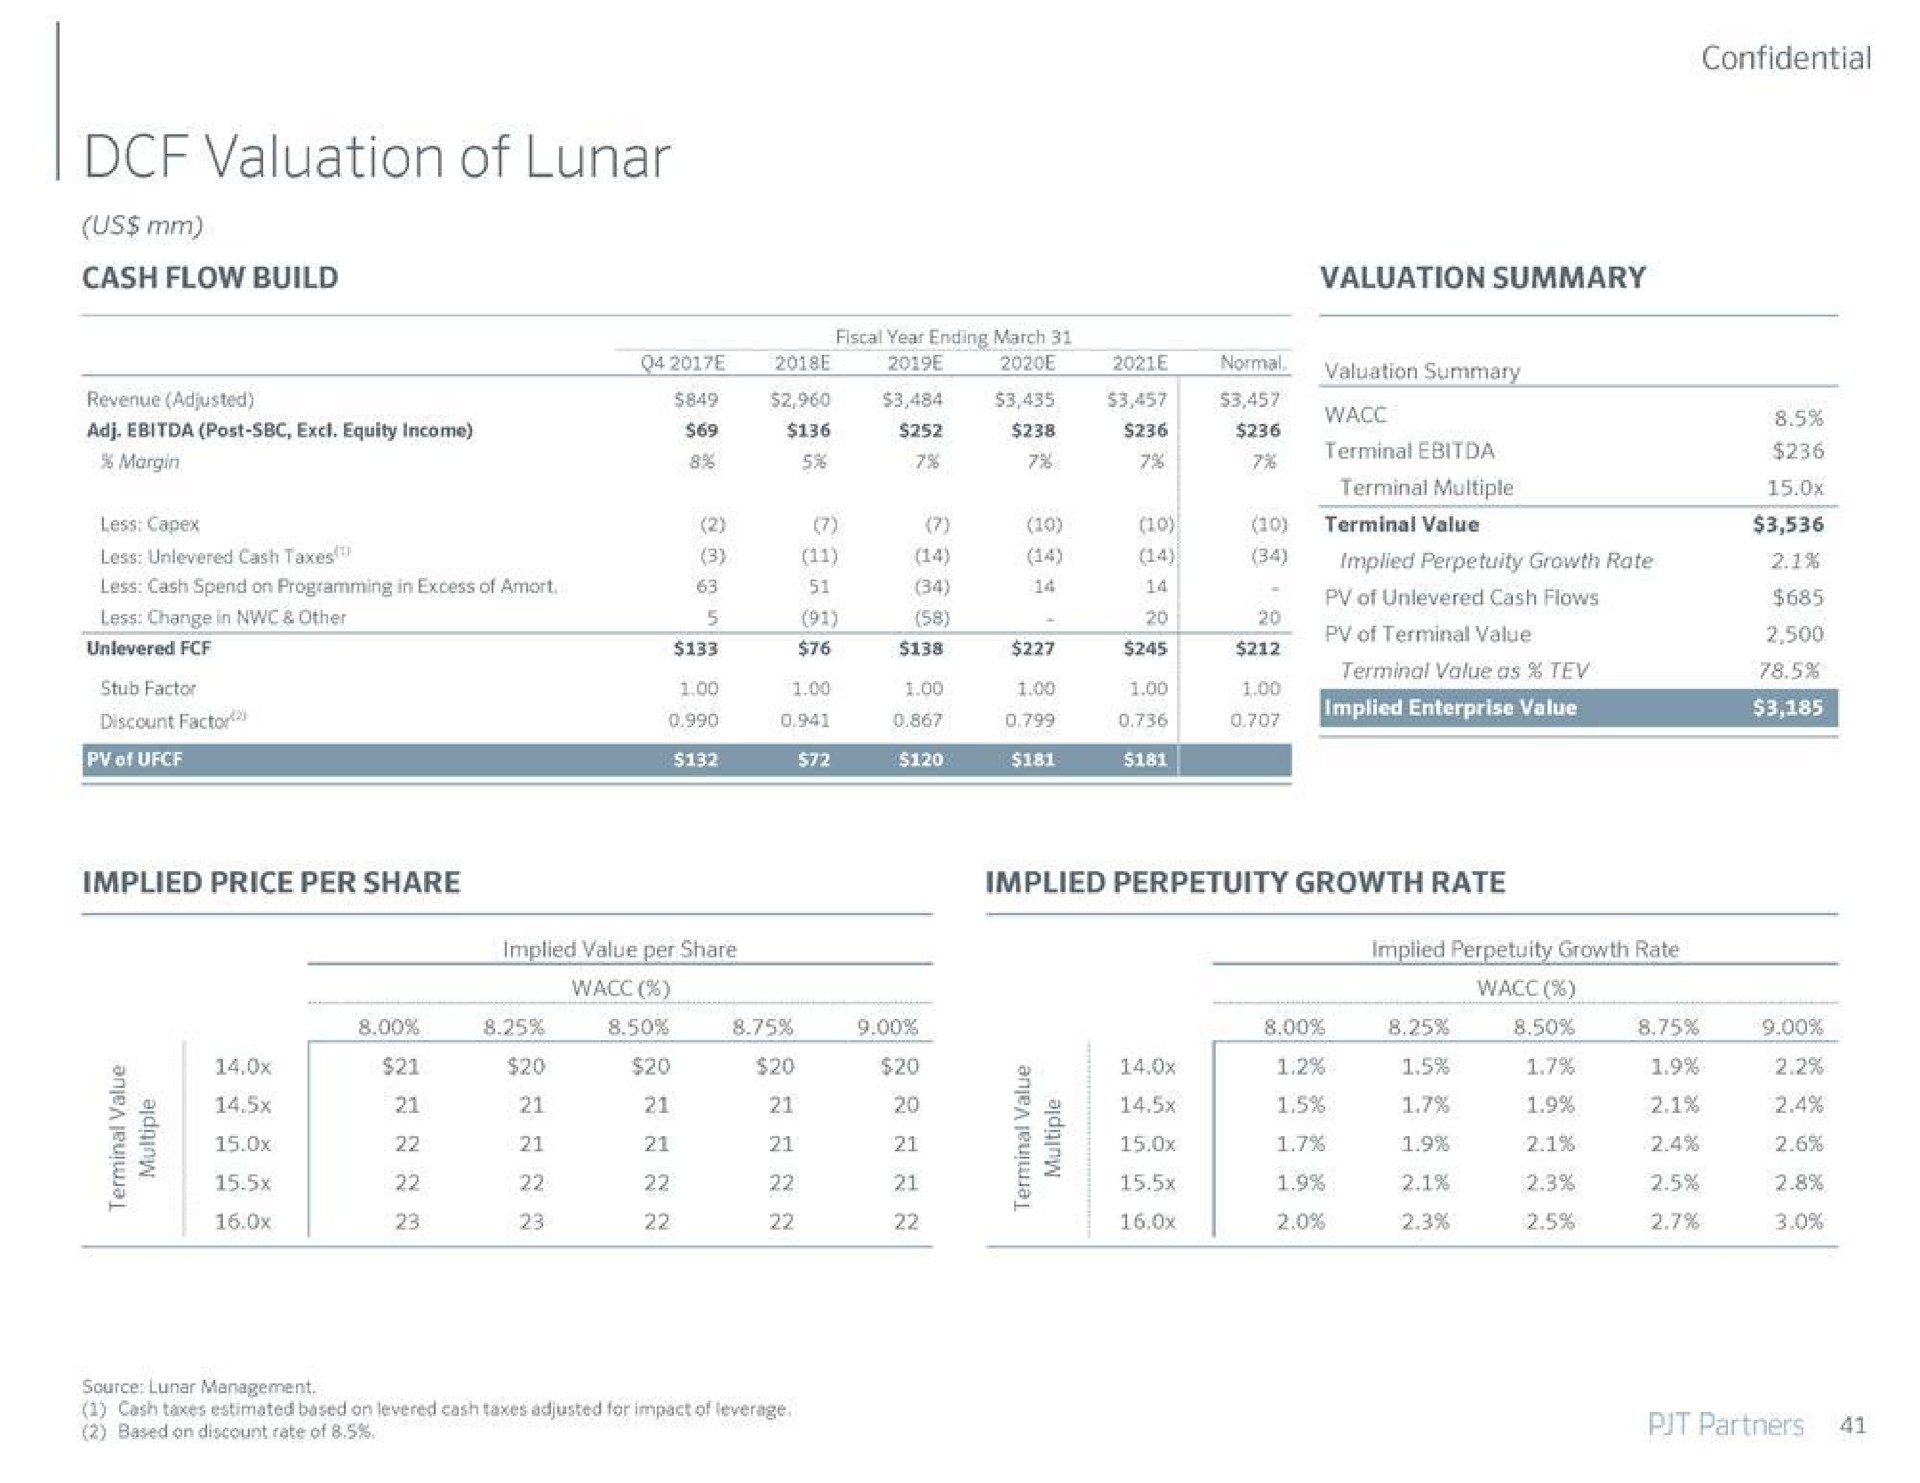 valuation of lunar | PJT Partners